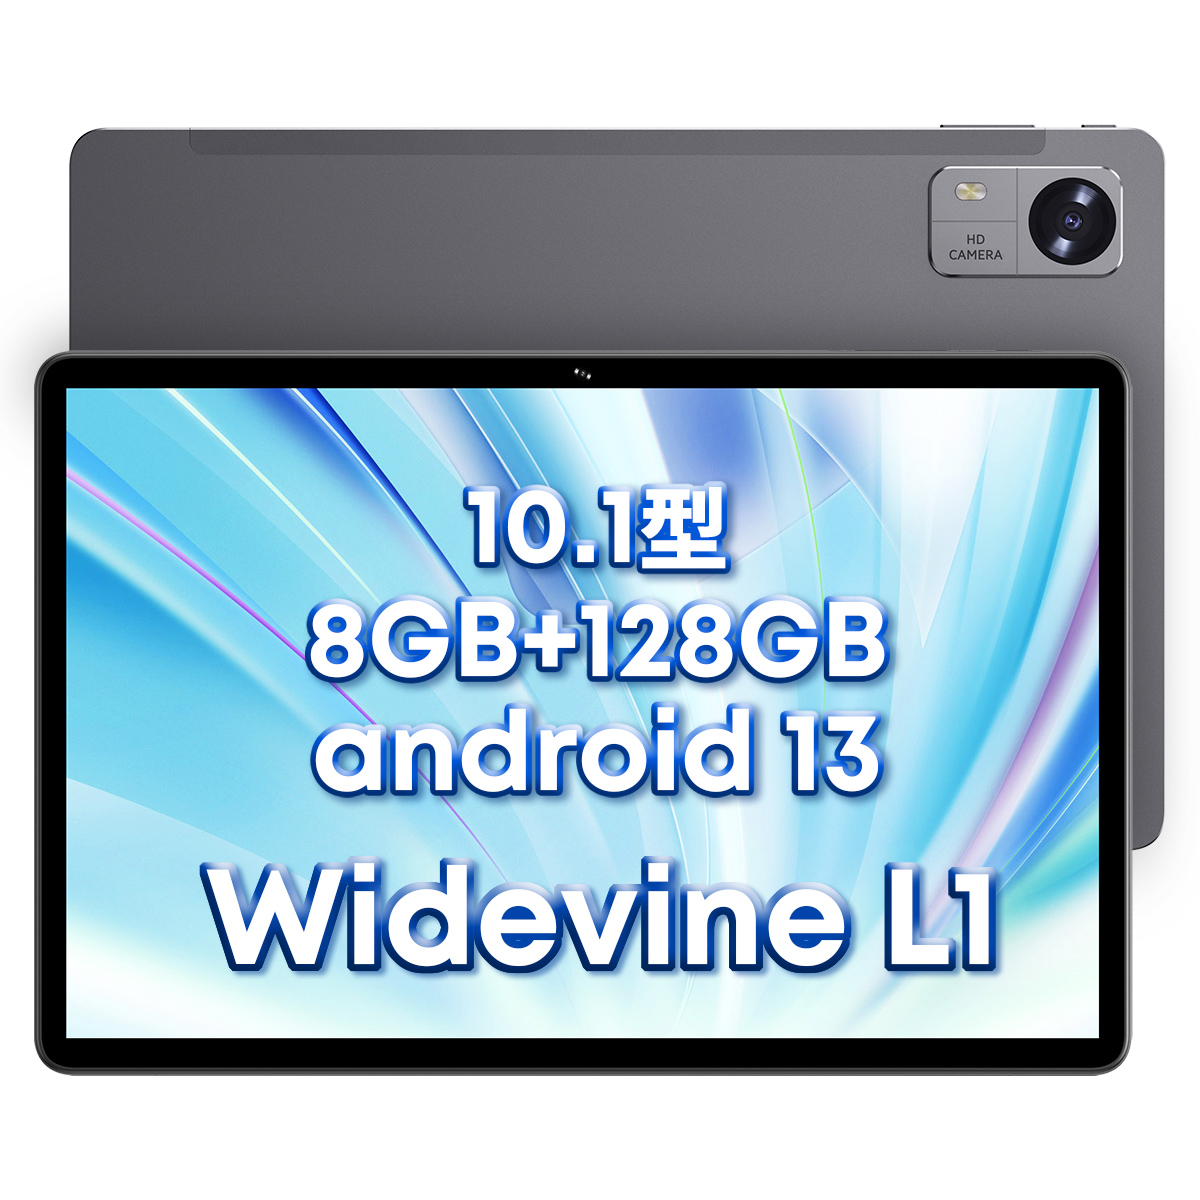 プレゼント 大人気 タブレット Android13 Hi10 xpro 8GB/128GB 10.1型 軽量 保護ケース付 SIMフリー WiFi  GPS FMラジオ WEBカメラ 子供向け お誕生日